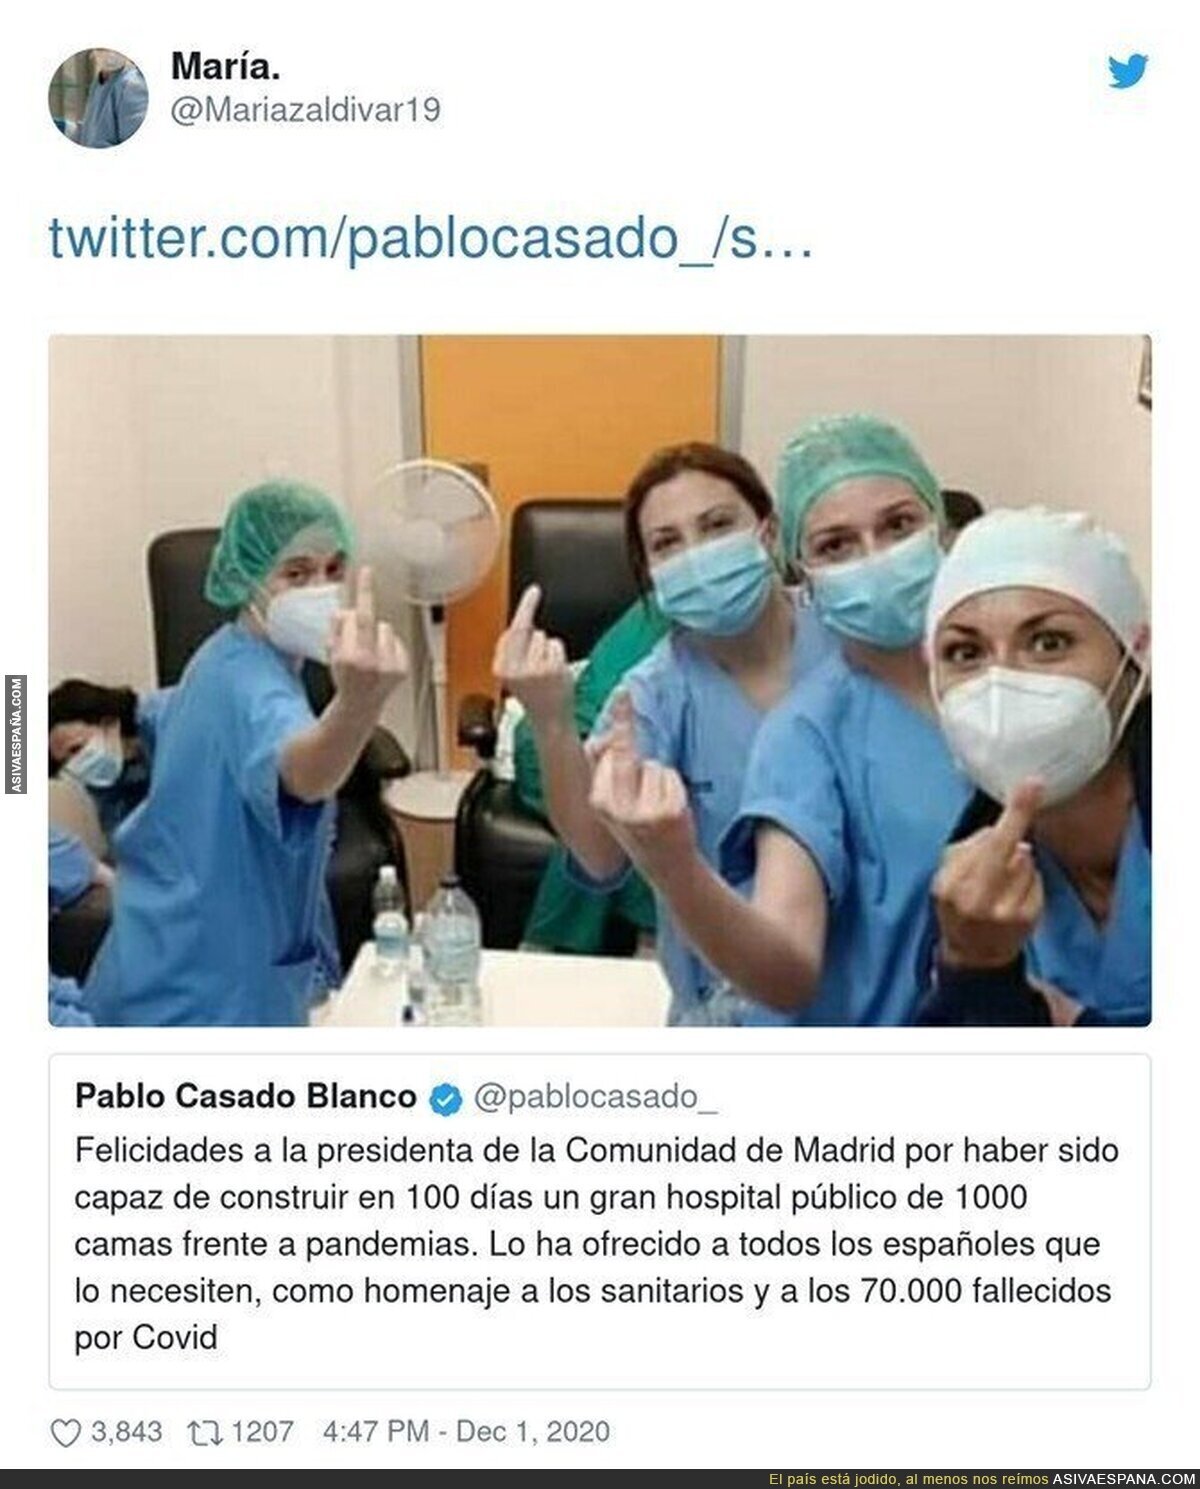 La respuesta de los sanitarios a Pablo Casado por el hospital de las pandemias